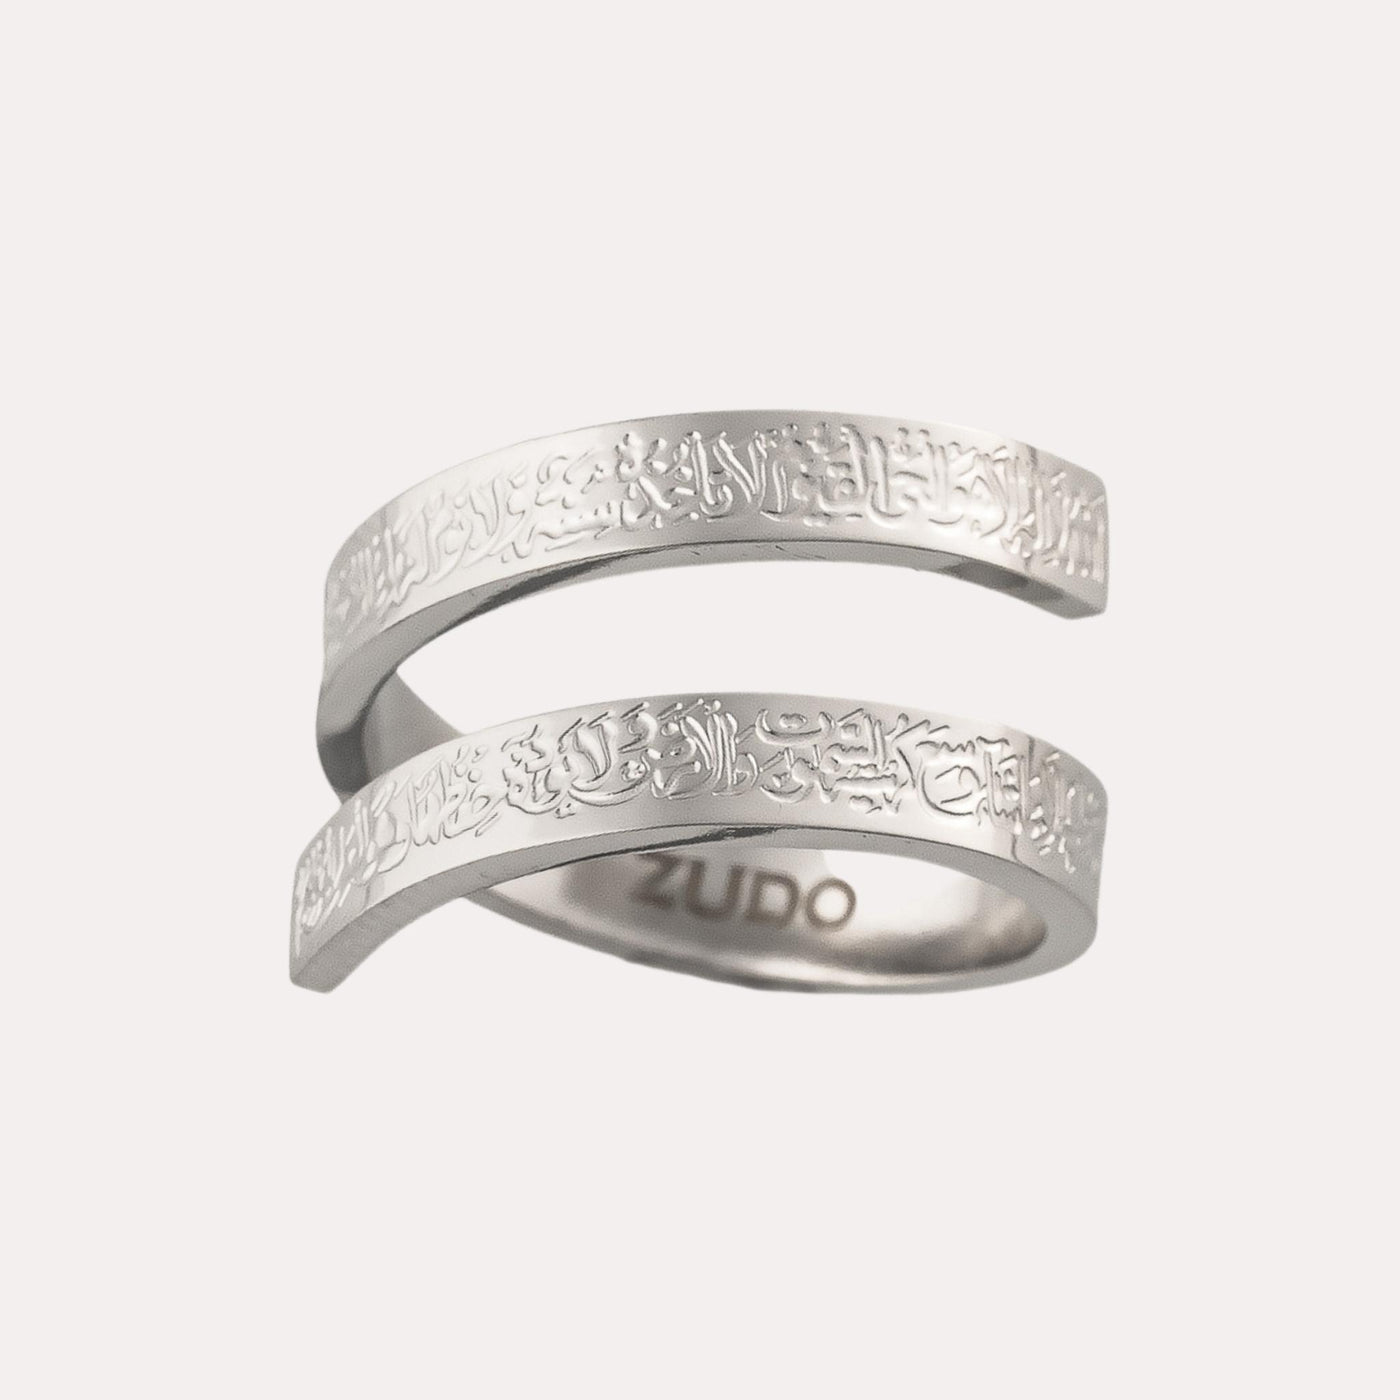 ZUDO-Ayatul-Kursi-Spiral-Ring-Silver